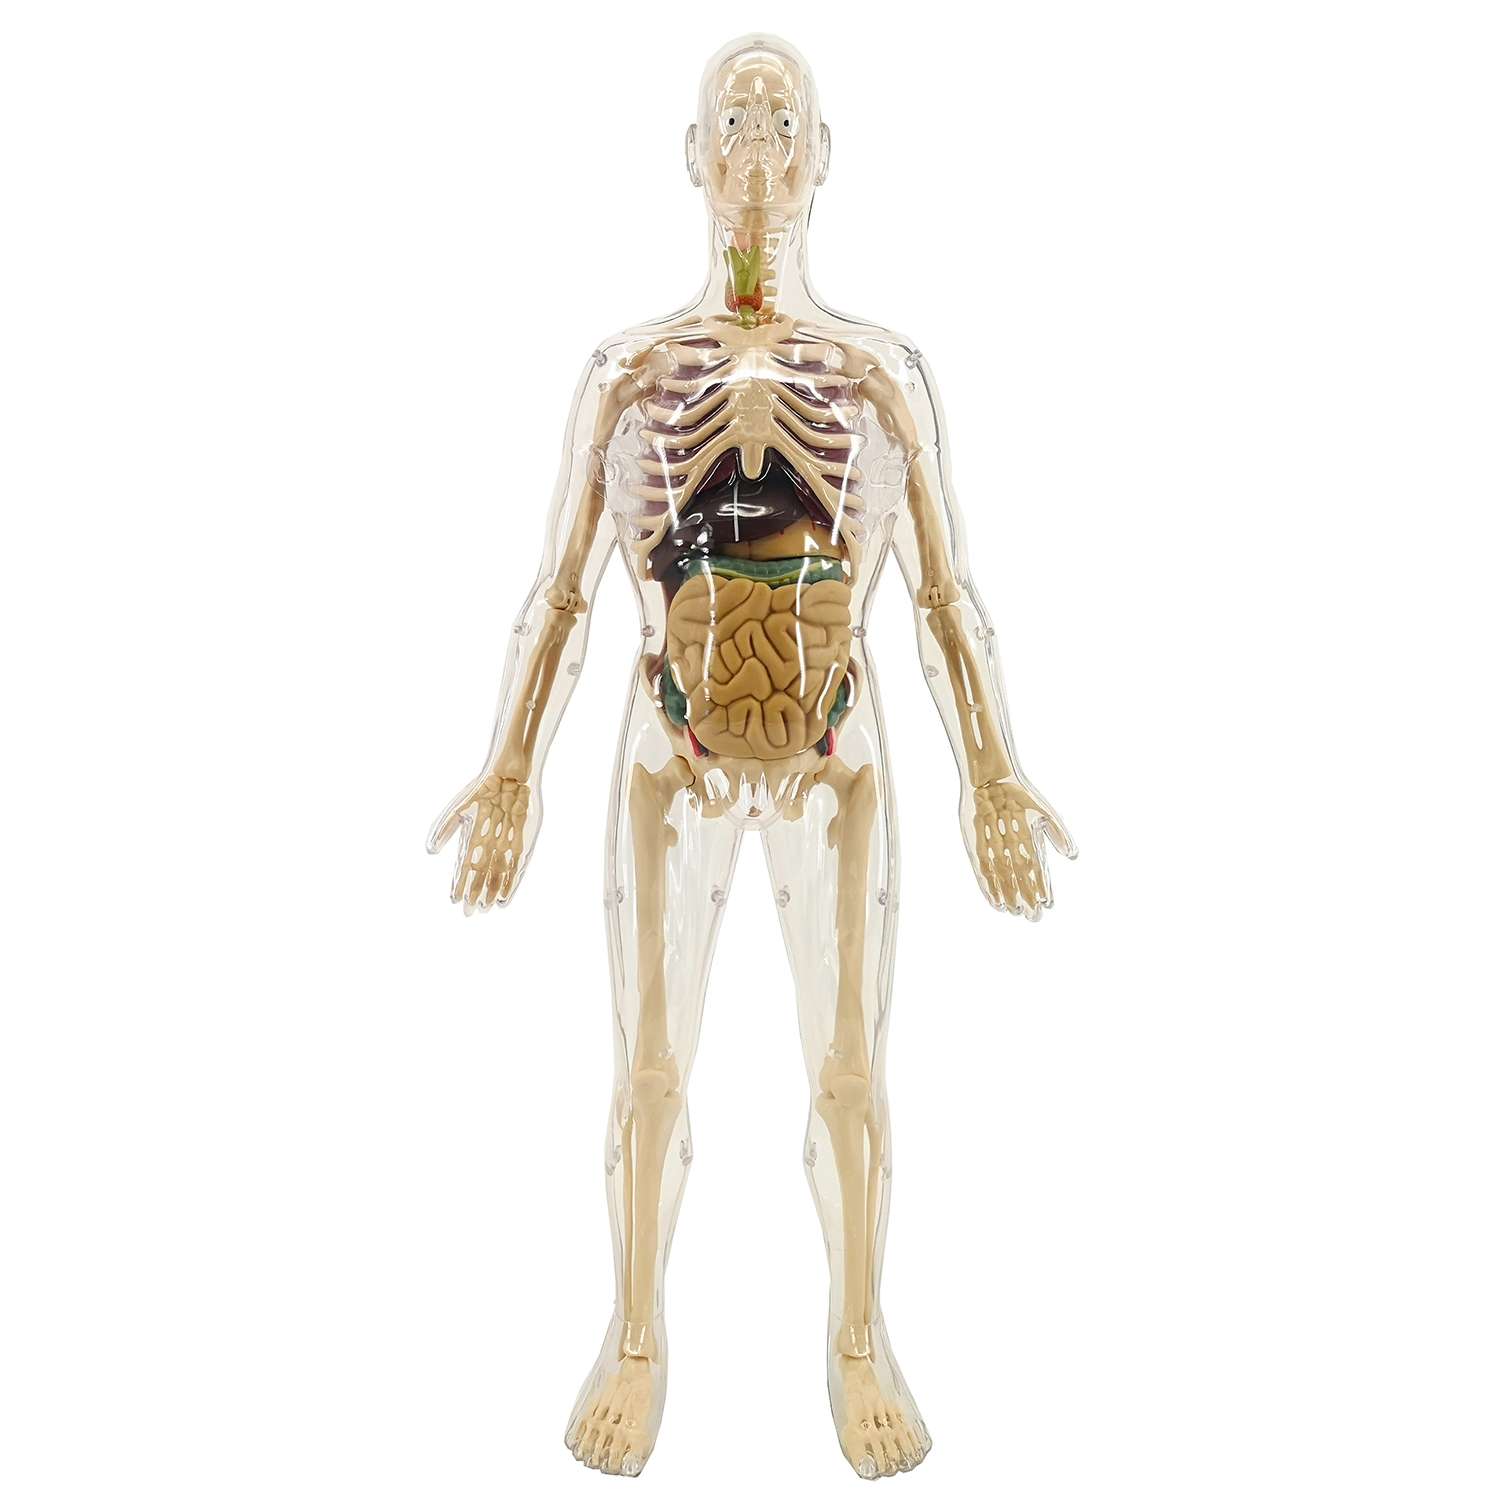 Анатомический набор EDU-TOYS органы и скелет мужчины 56см - фото 1